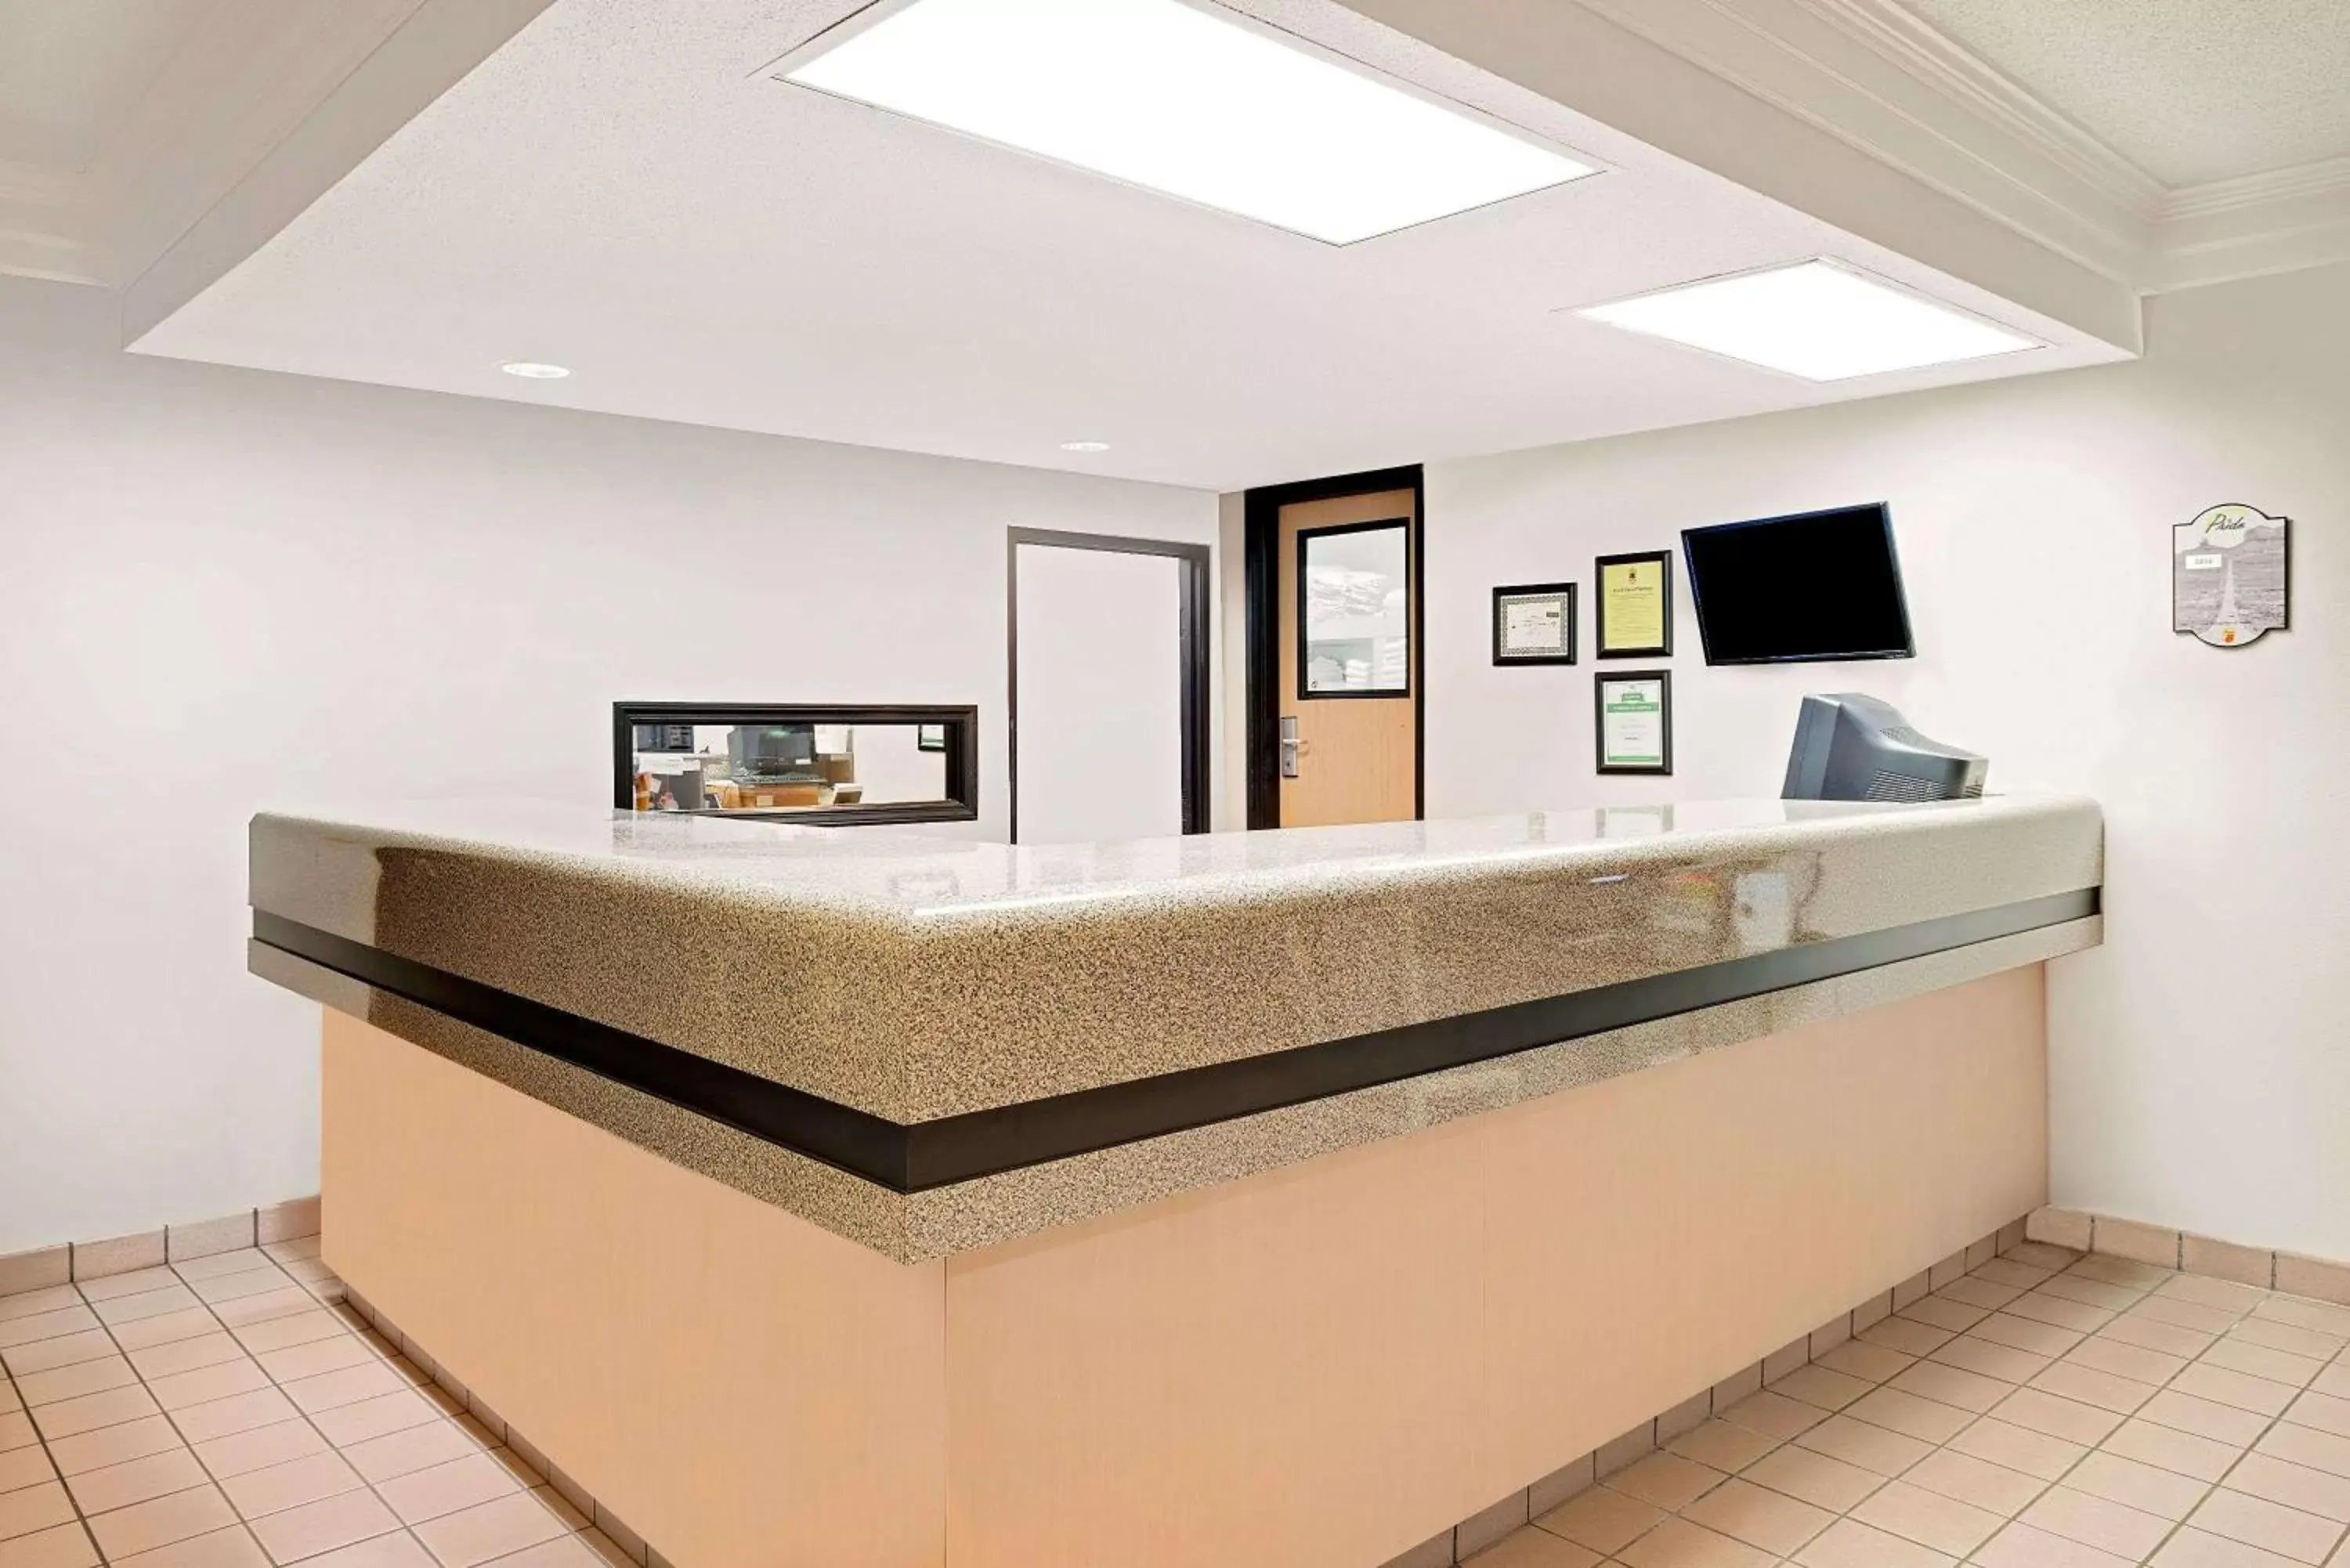 Lobby or reception, Lobby/Reception in Super 8 by Wyndham Metropolis